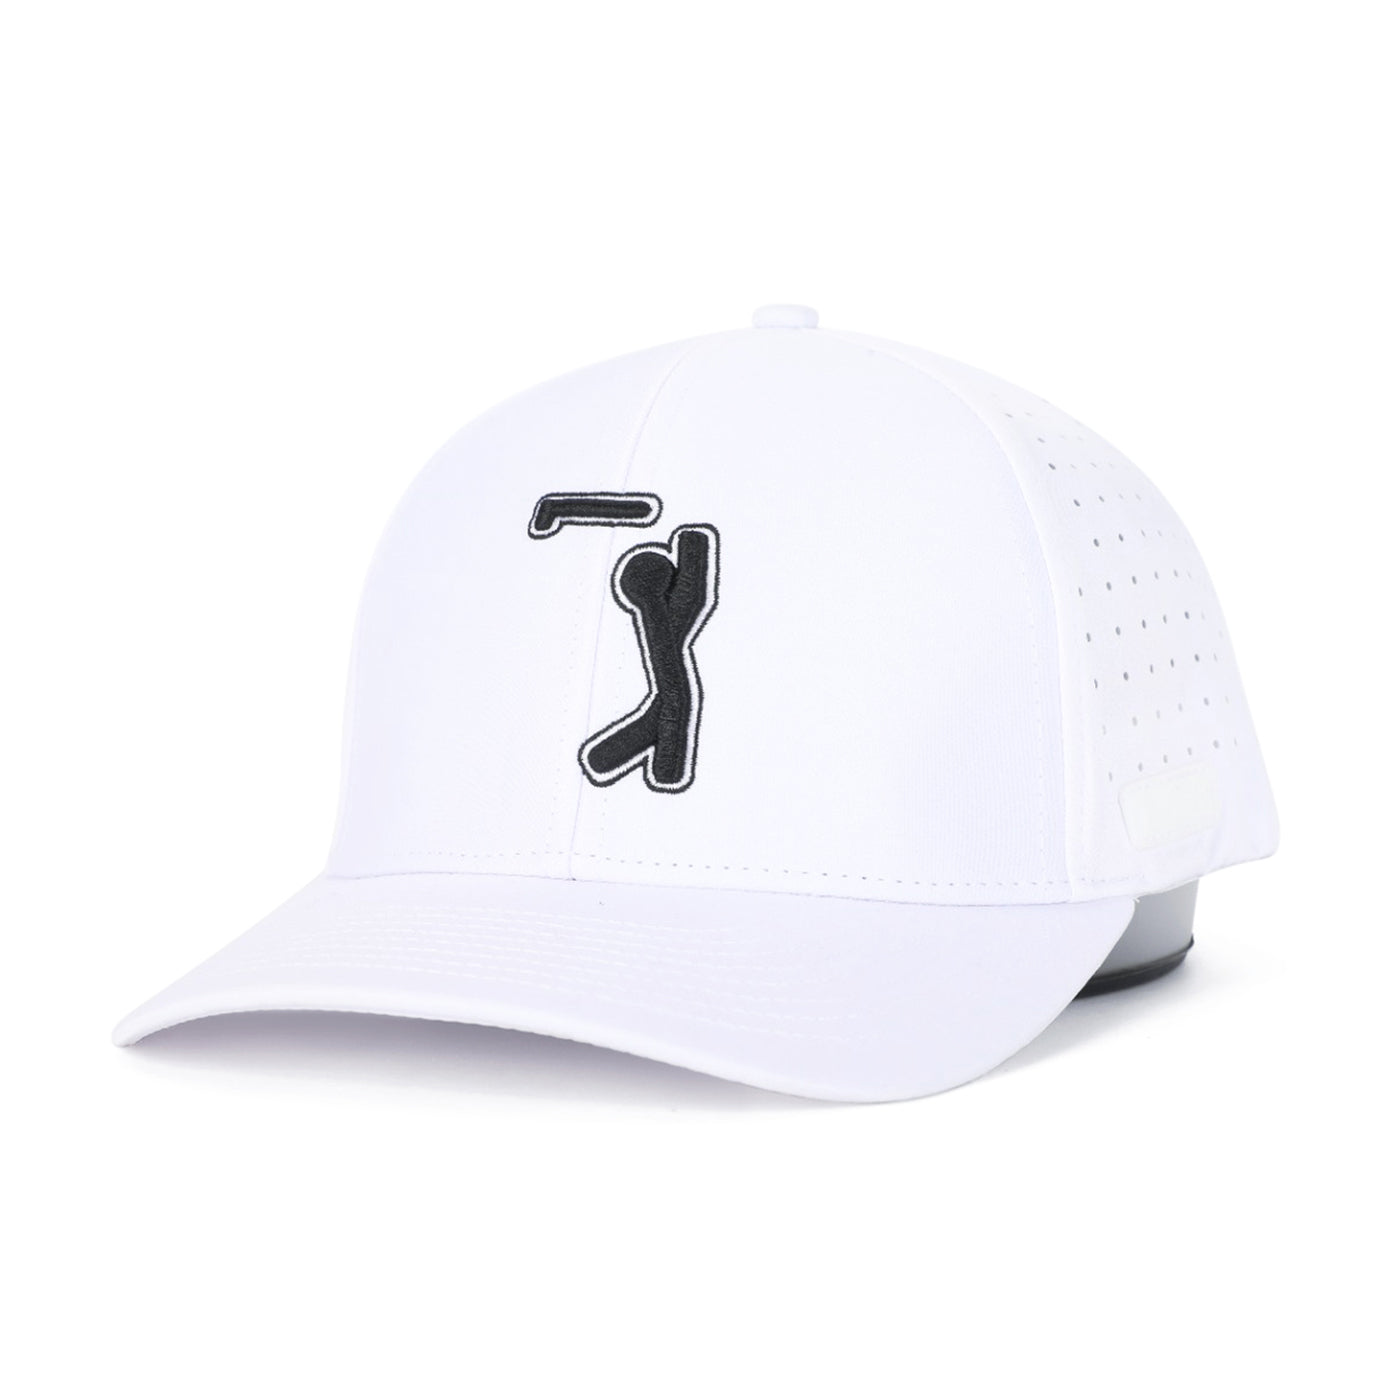 Bogeyman White - Performance Golf Hat - Stretch Fit